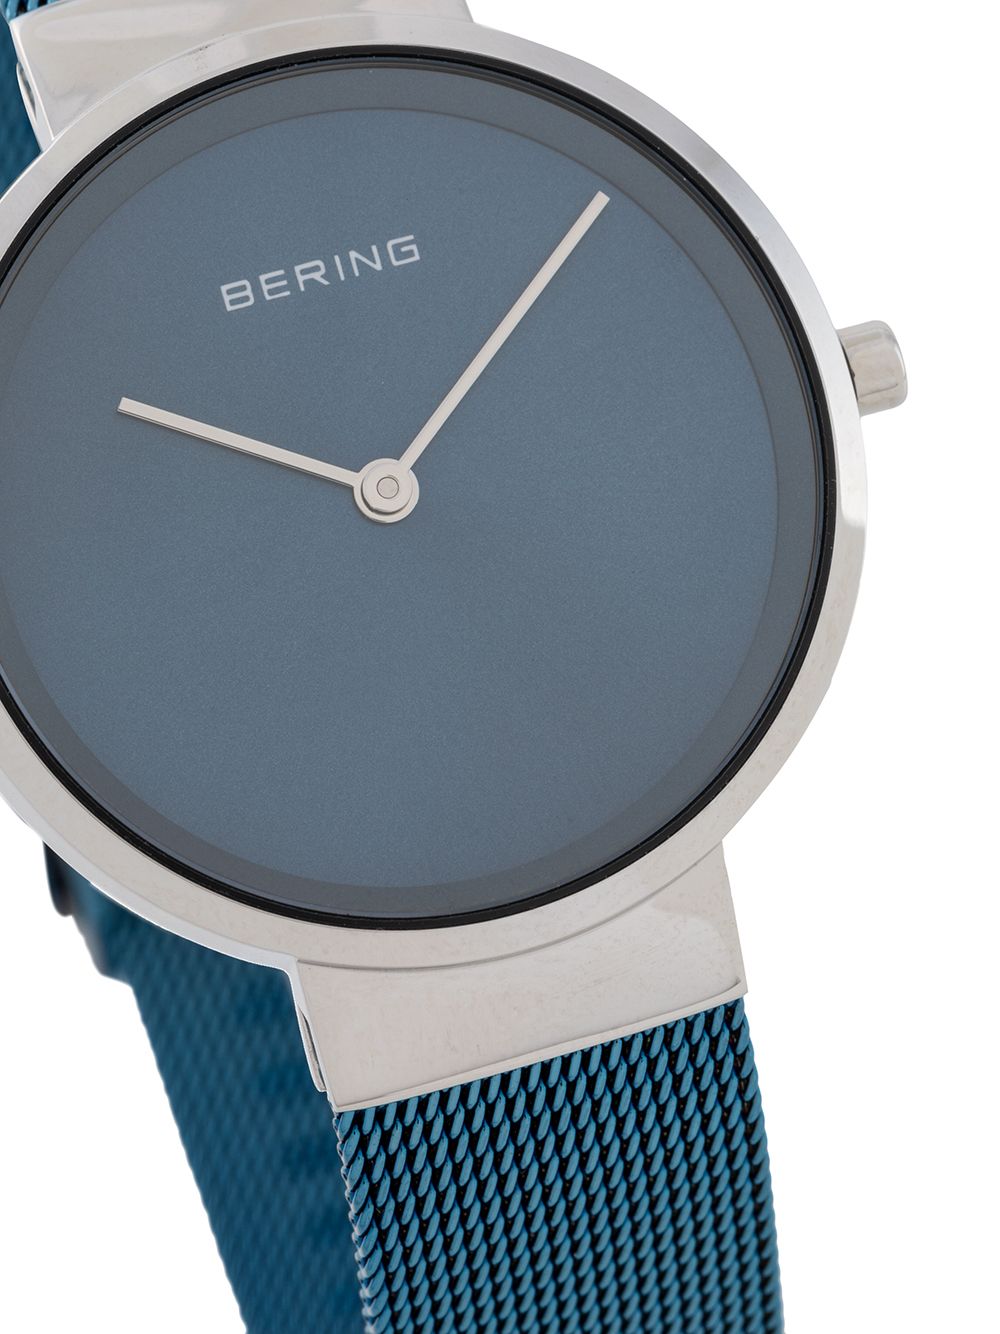 фото Bering наручные часы с фактурным ремешком